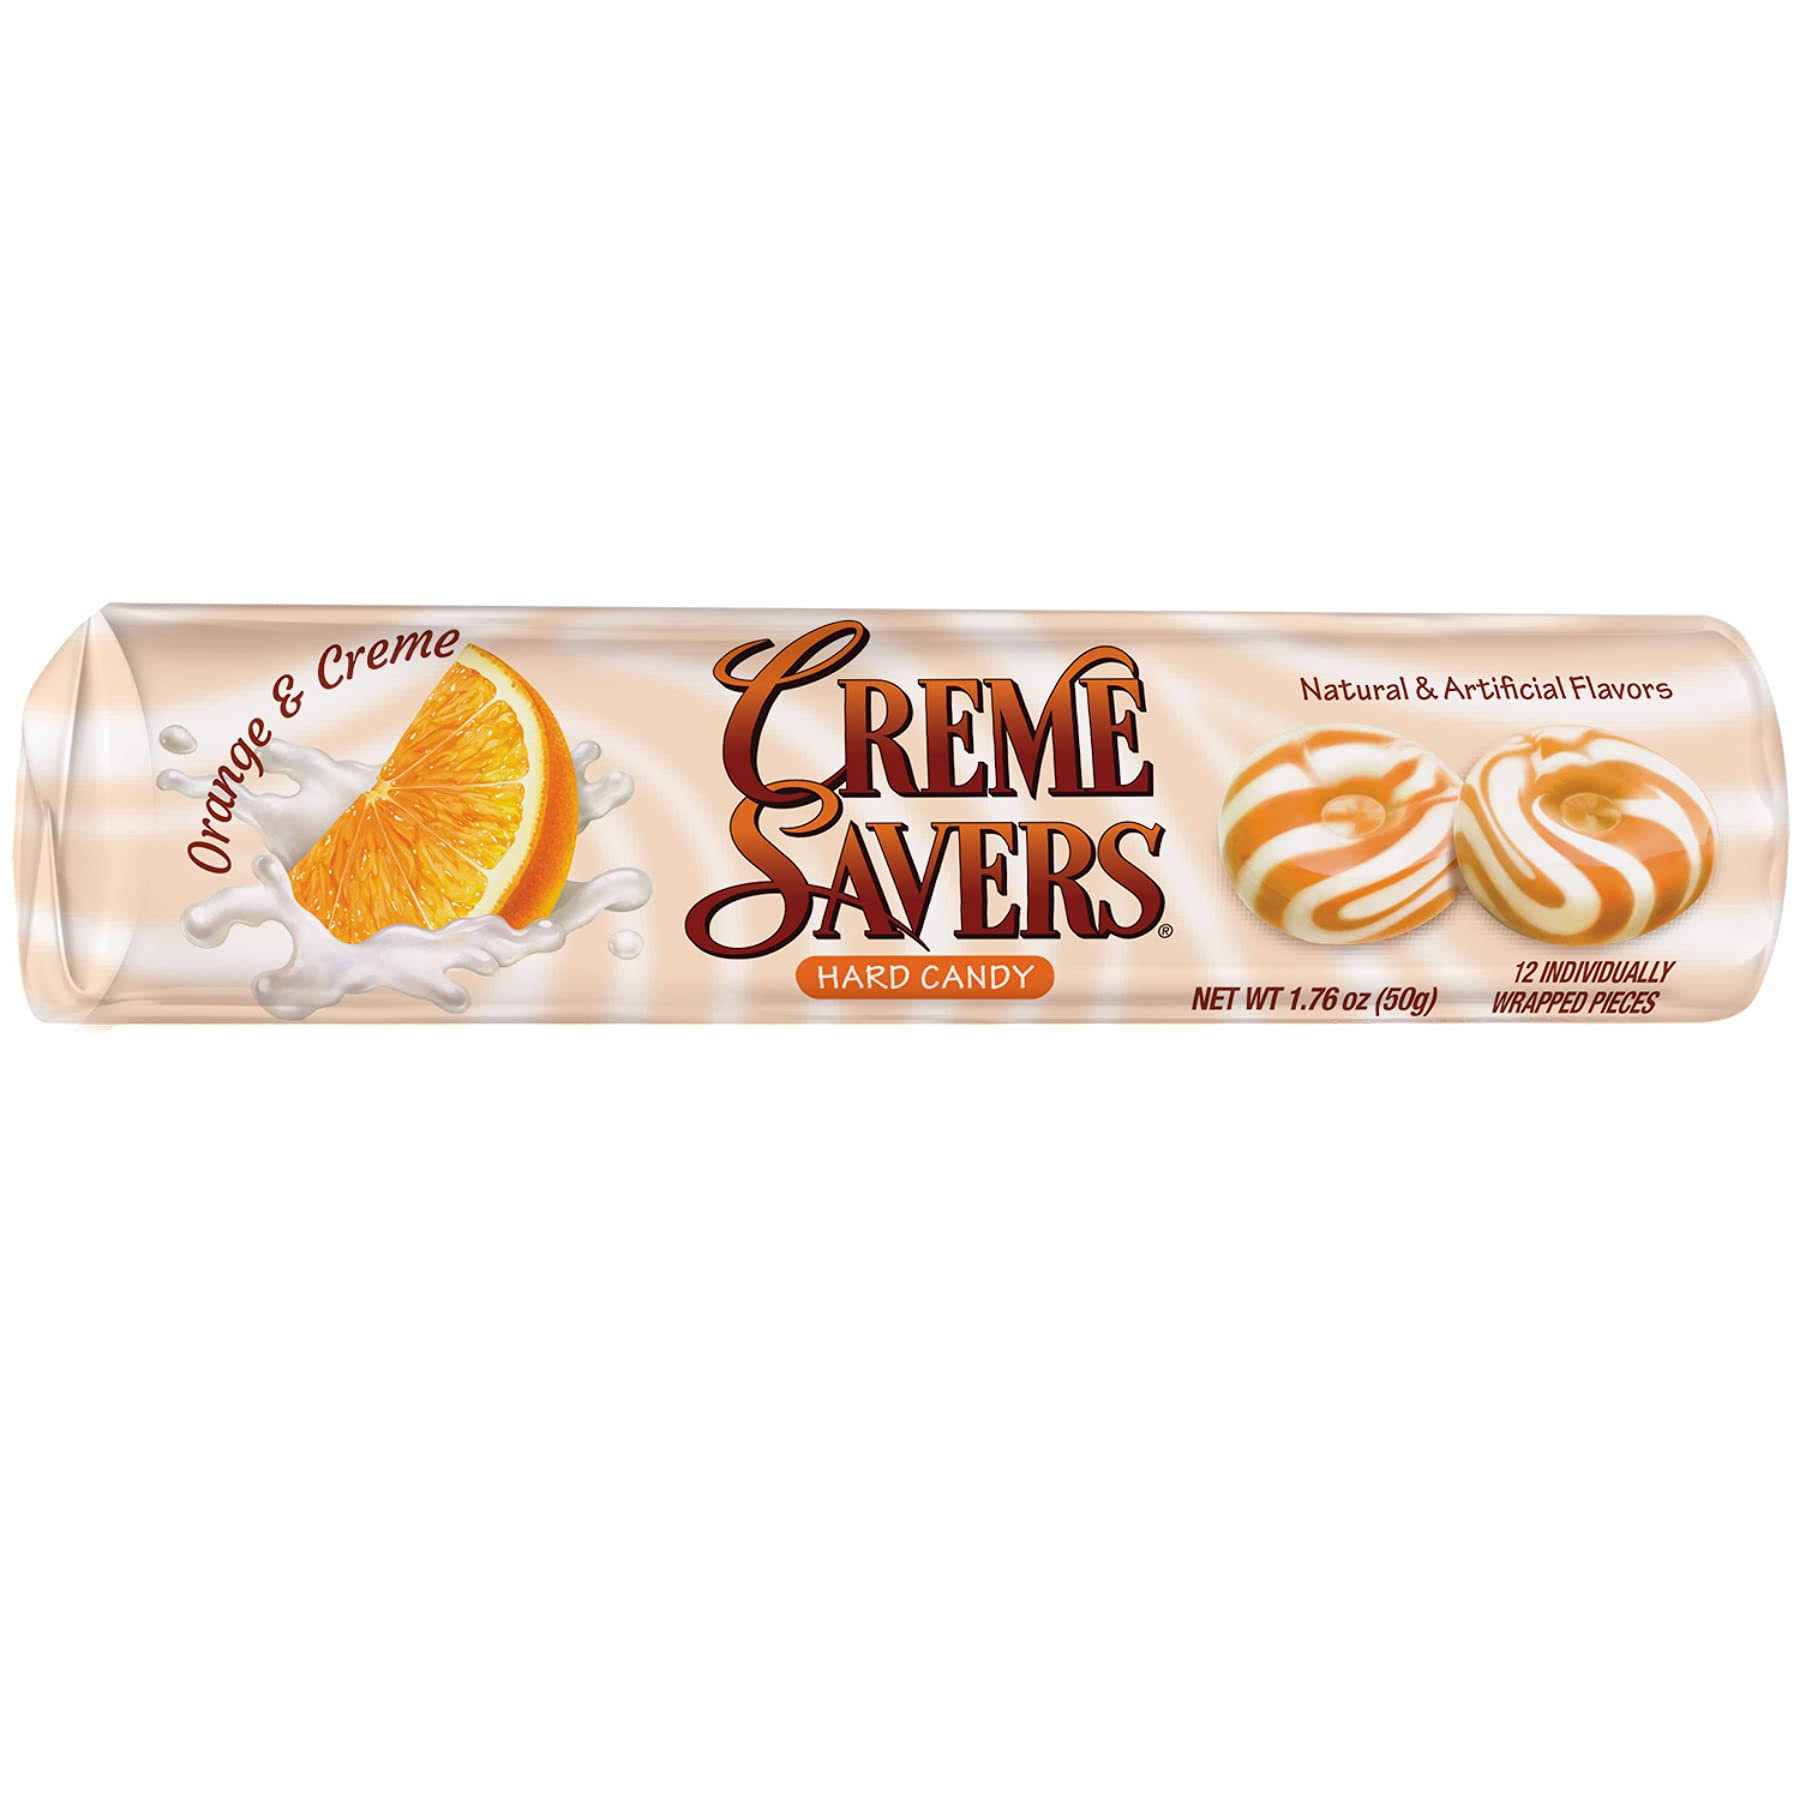 Creme Savers Orange & Creme Hard Candy - 1.76 oz